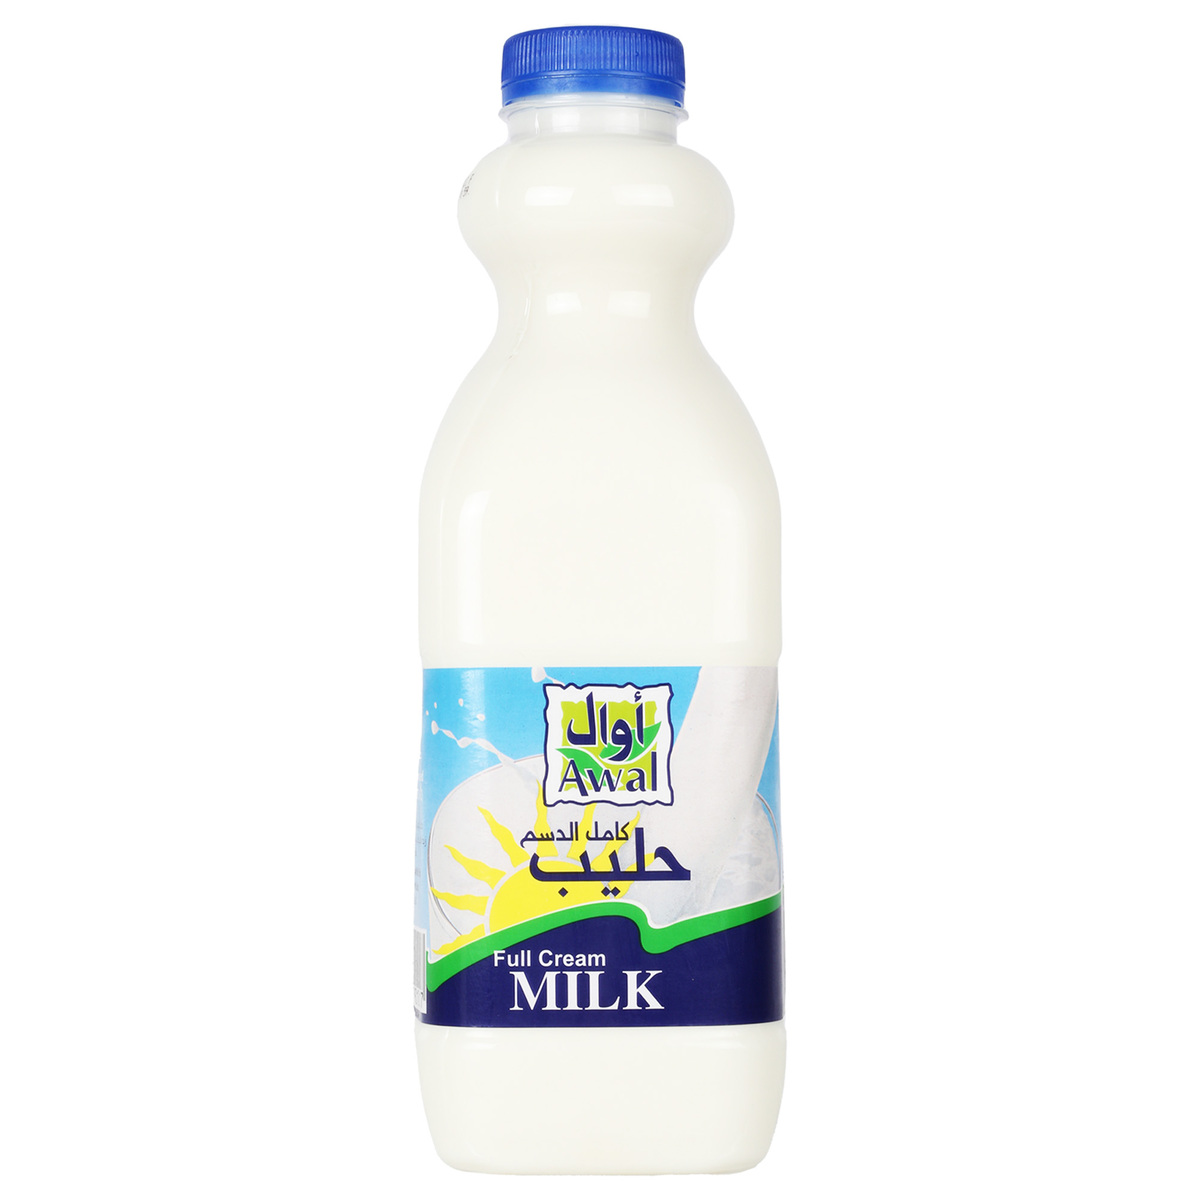 Awal Fresh Milk Full Cream 1Litre